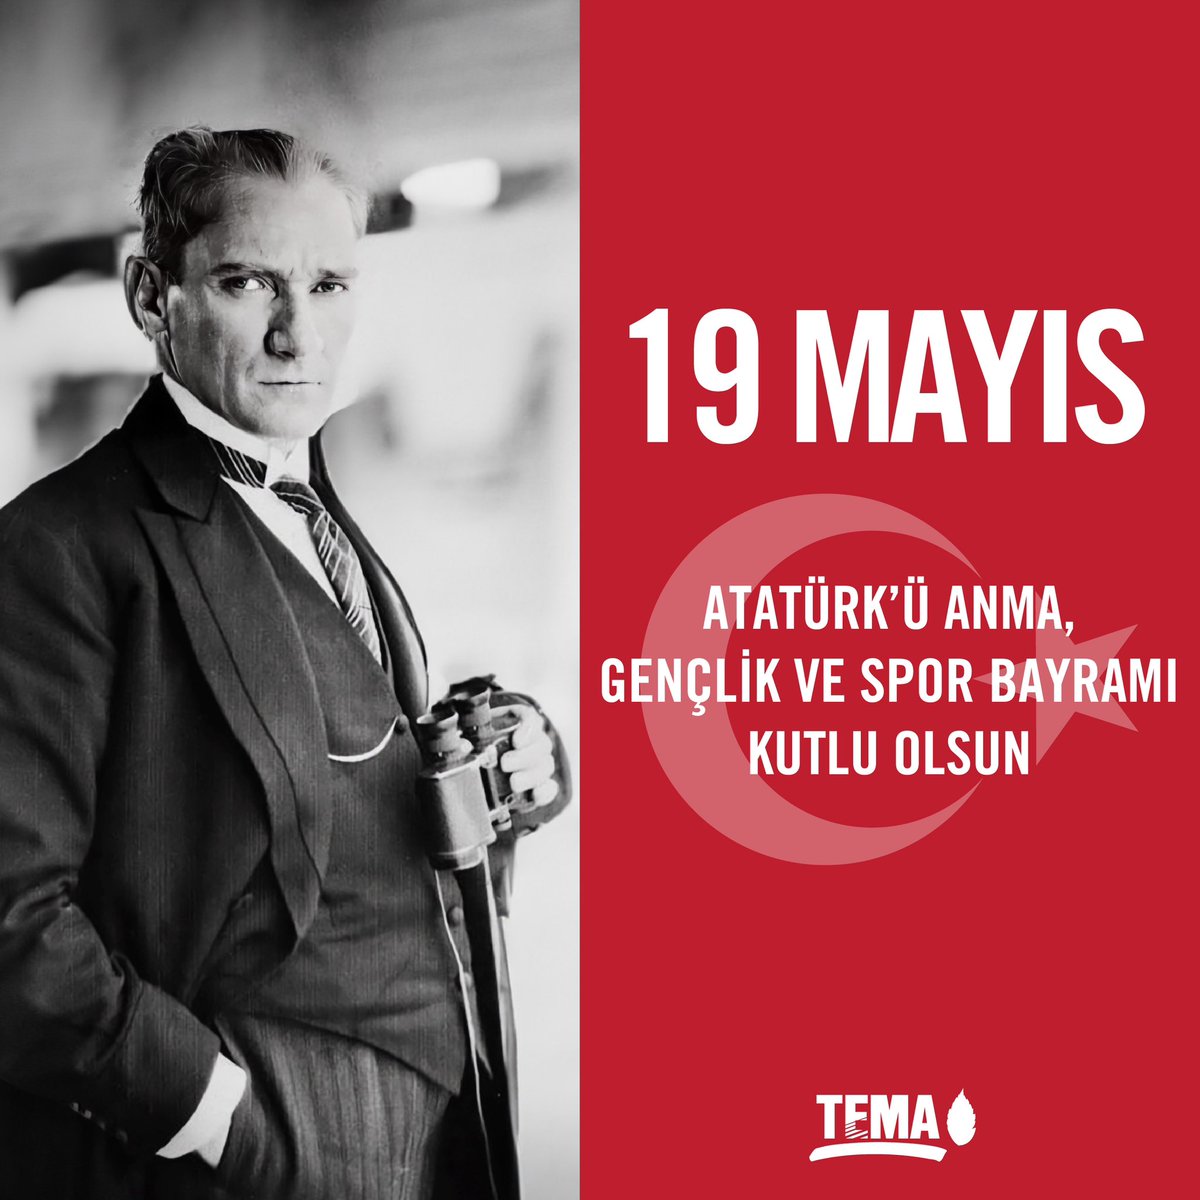 19 Mayıs Atatürk’ü Anma, Gençlik ve Spor Bayramı kutlu olsun. 🇹🇷